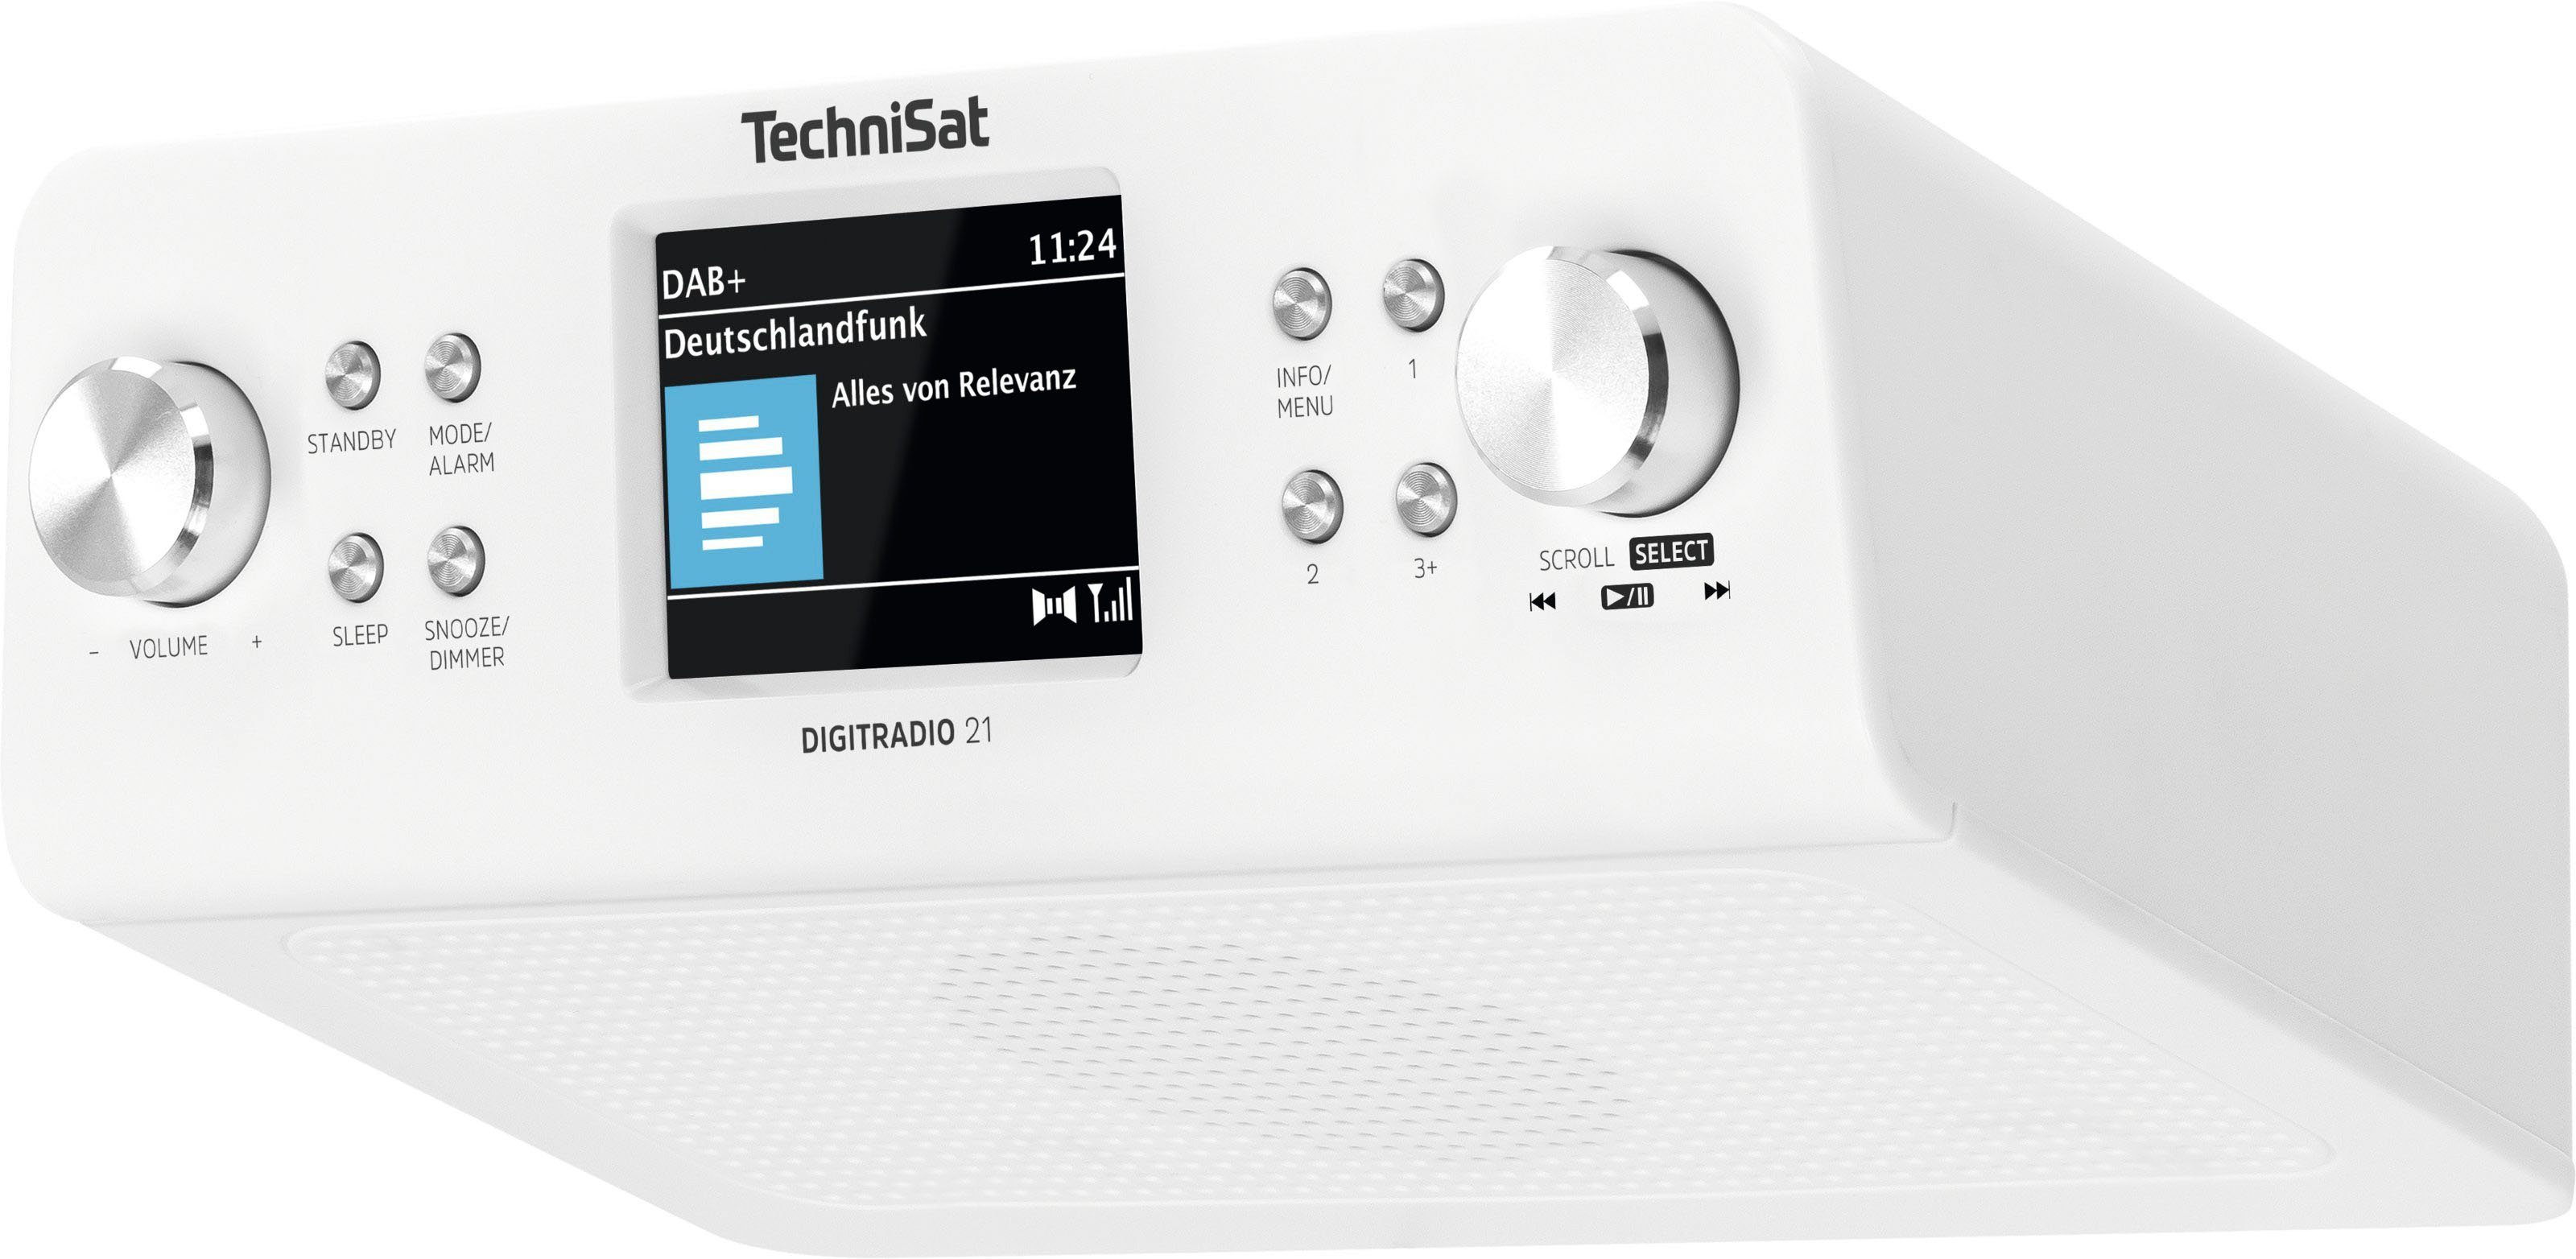 mit Unterbau-Radio,Küchen-Radio) 2 Küchen-Radio 21 DIGITRADIO UKW TechniSat W, (DAB), weiß (Digitalradio RDS,